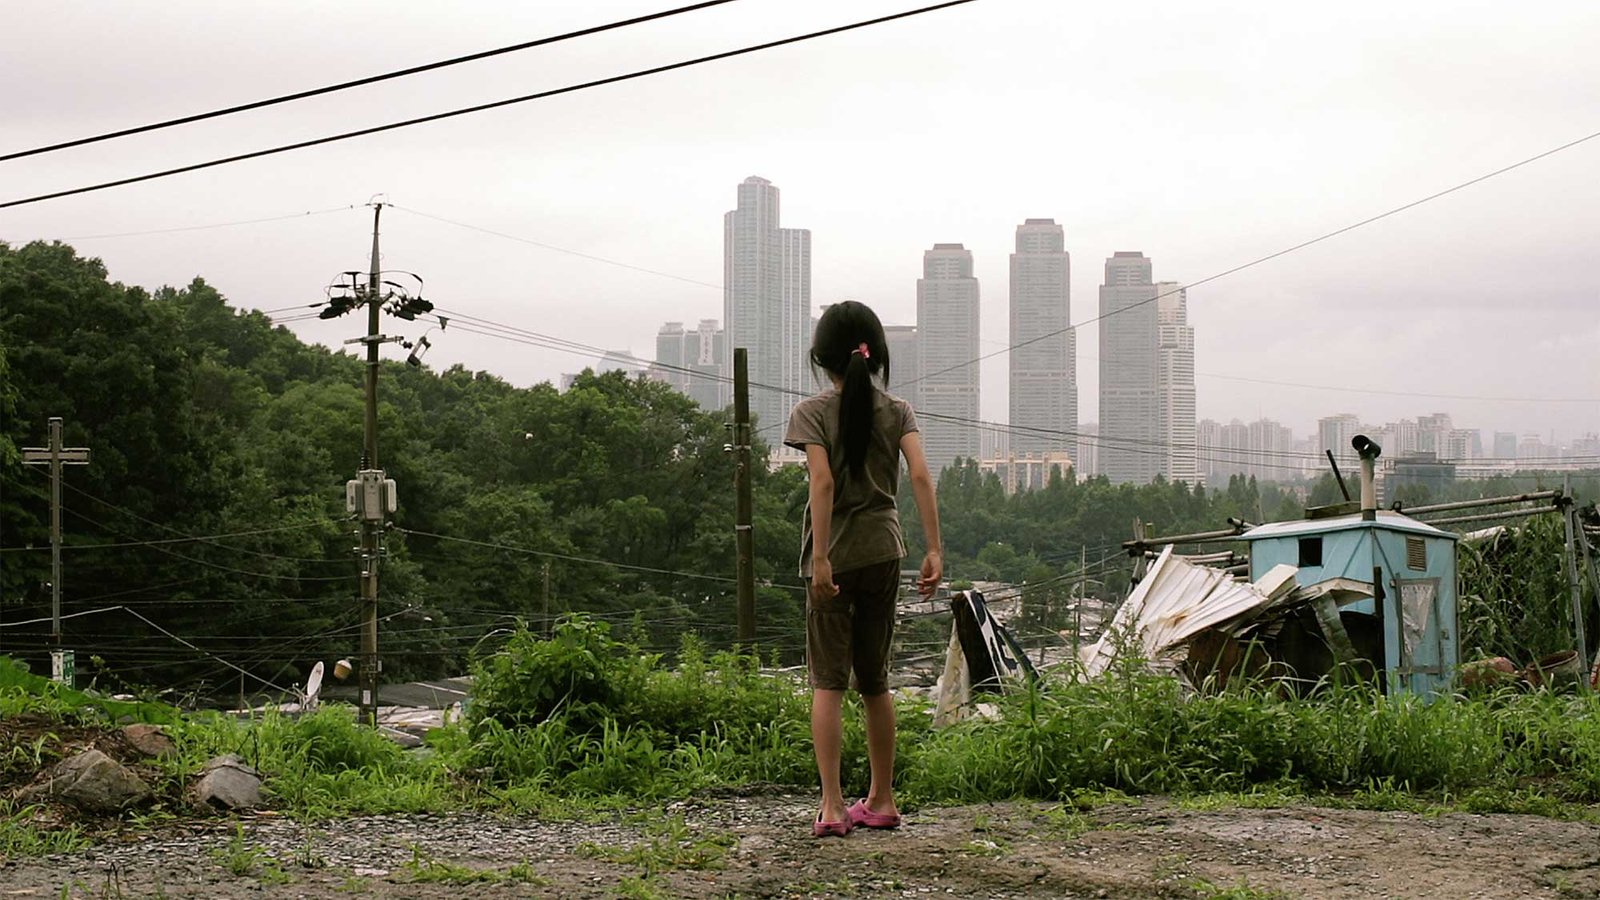 Seoul Based DOP Shoots Short Film Cold Summer for Director Namhui Park